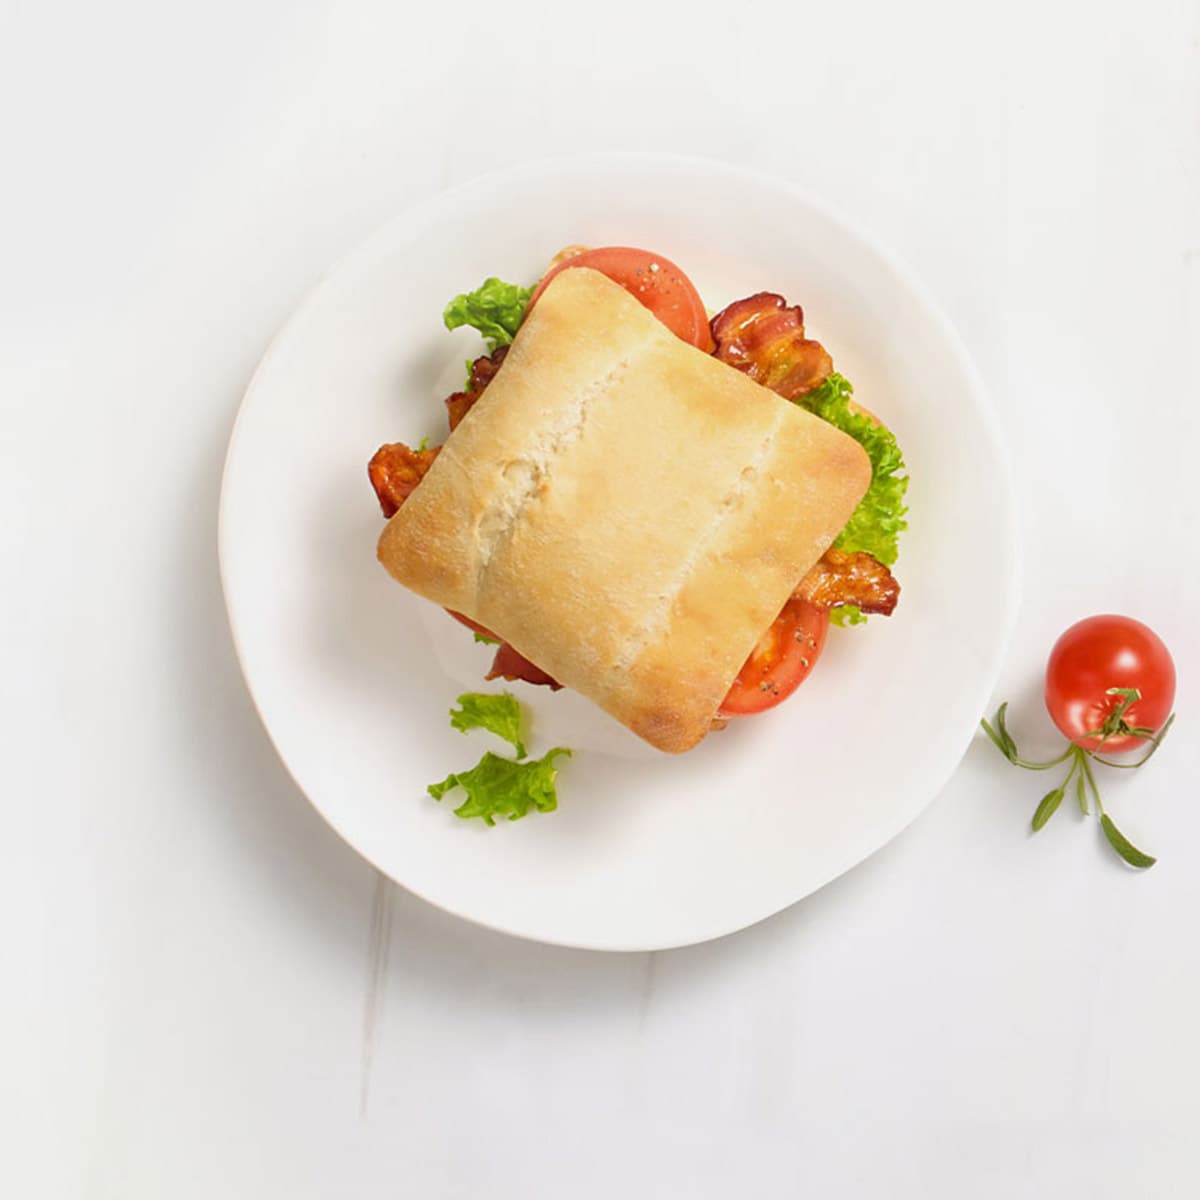 sliced soft artisan bread sandwich in a plate